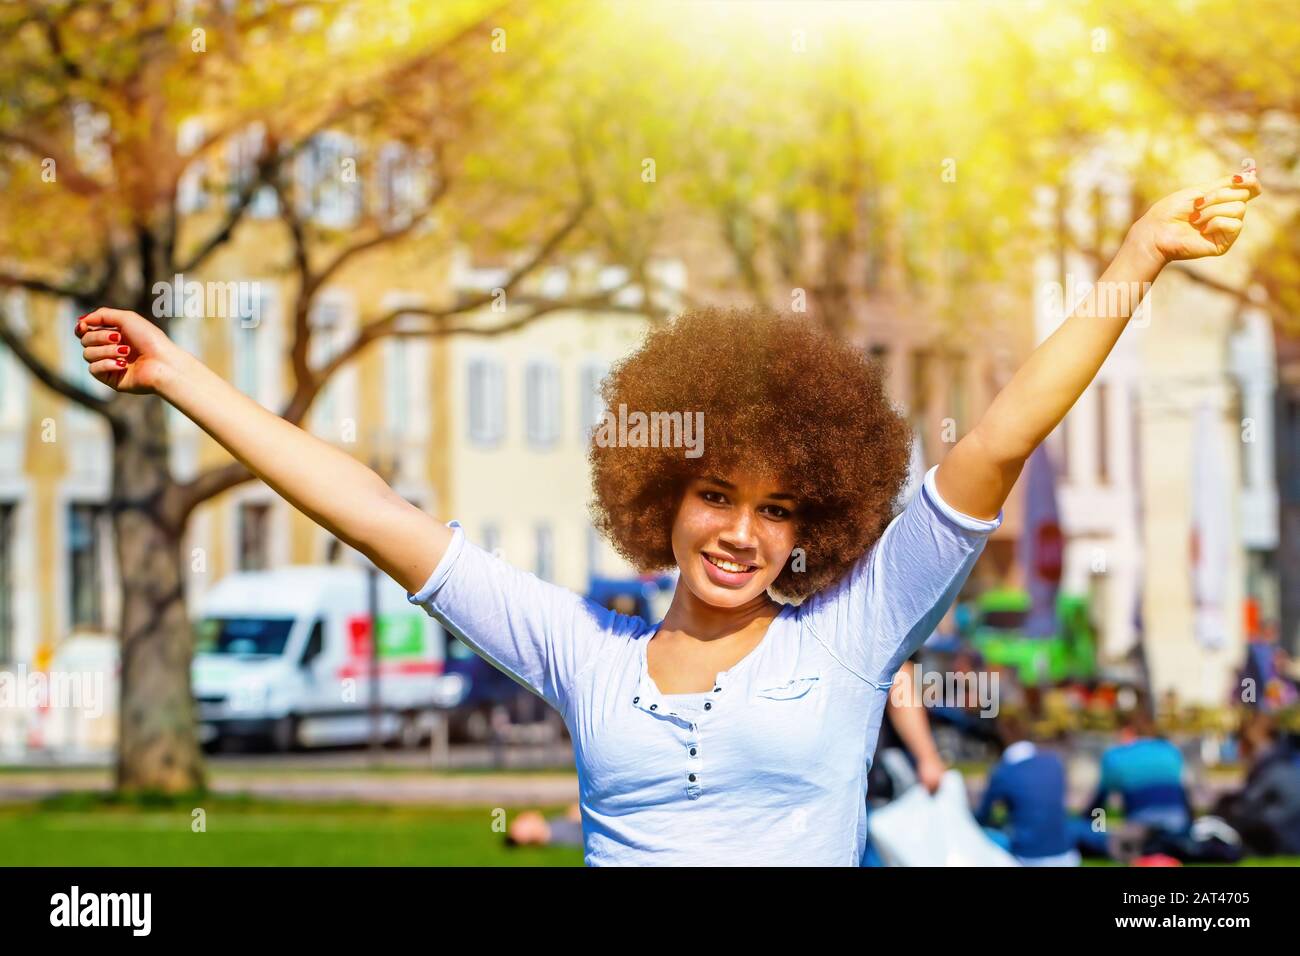 Happy girl in spring sun Stock Photo